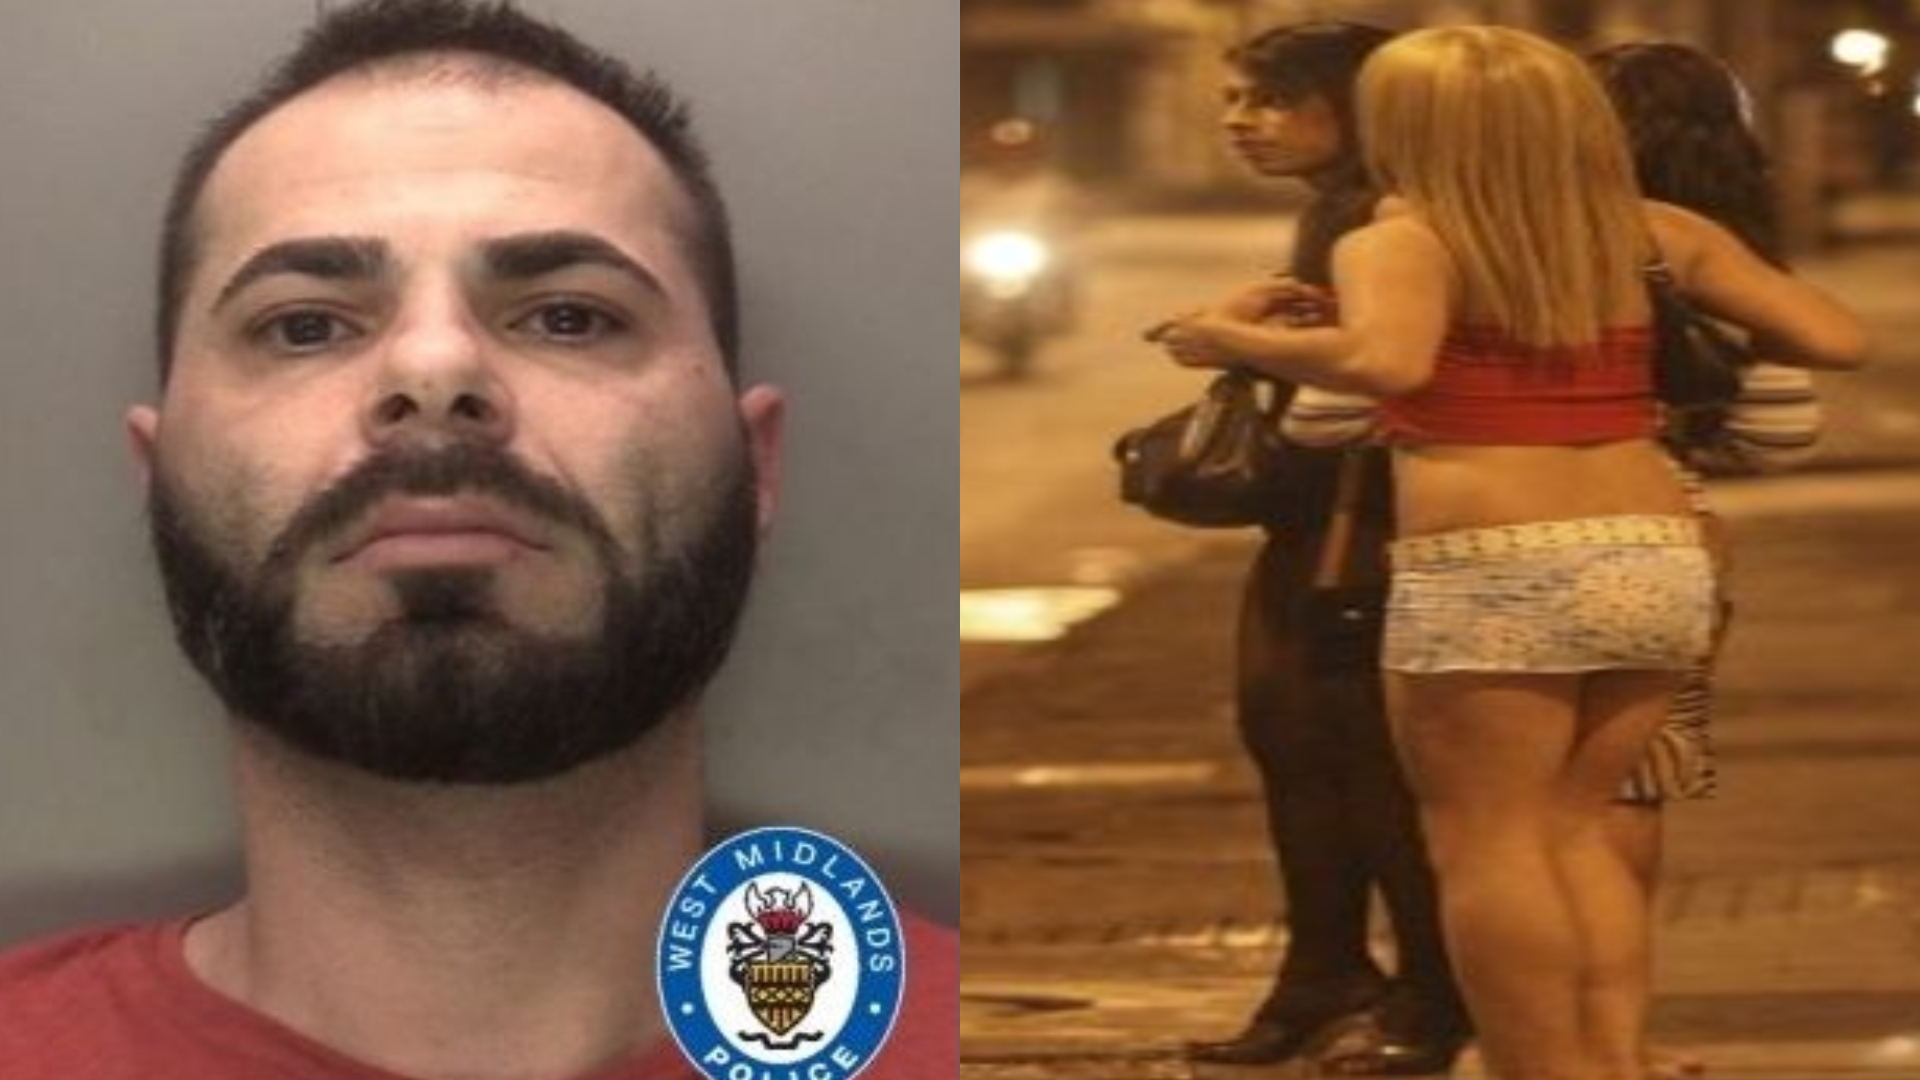 Un român ce viola prostituate în Marea Britanie, prins datorită unui odorizant din mașină